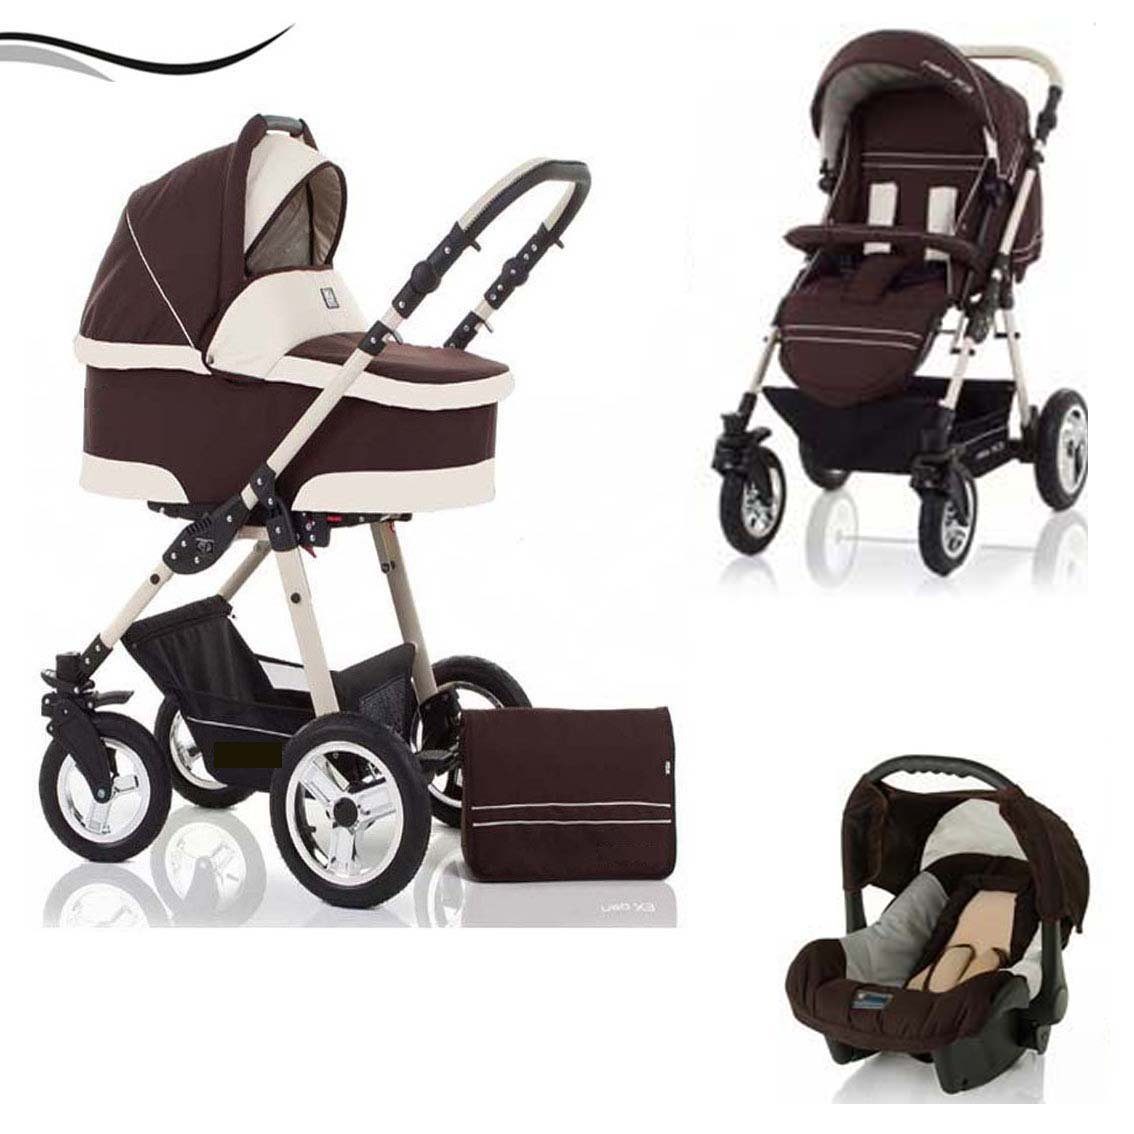 babies-on-wheels Kombi-Kinderwagen City Star 3 in 1 inkl. Autositz - 16 Teile - von Geburt bis 4 Jahre in 16 Farben Braun-Creme